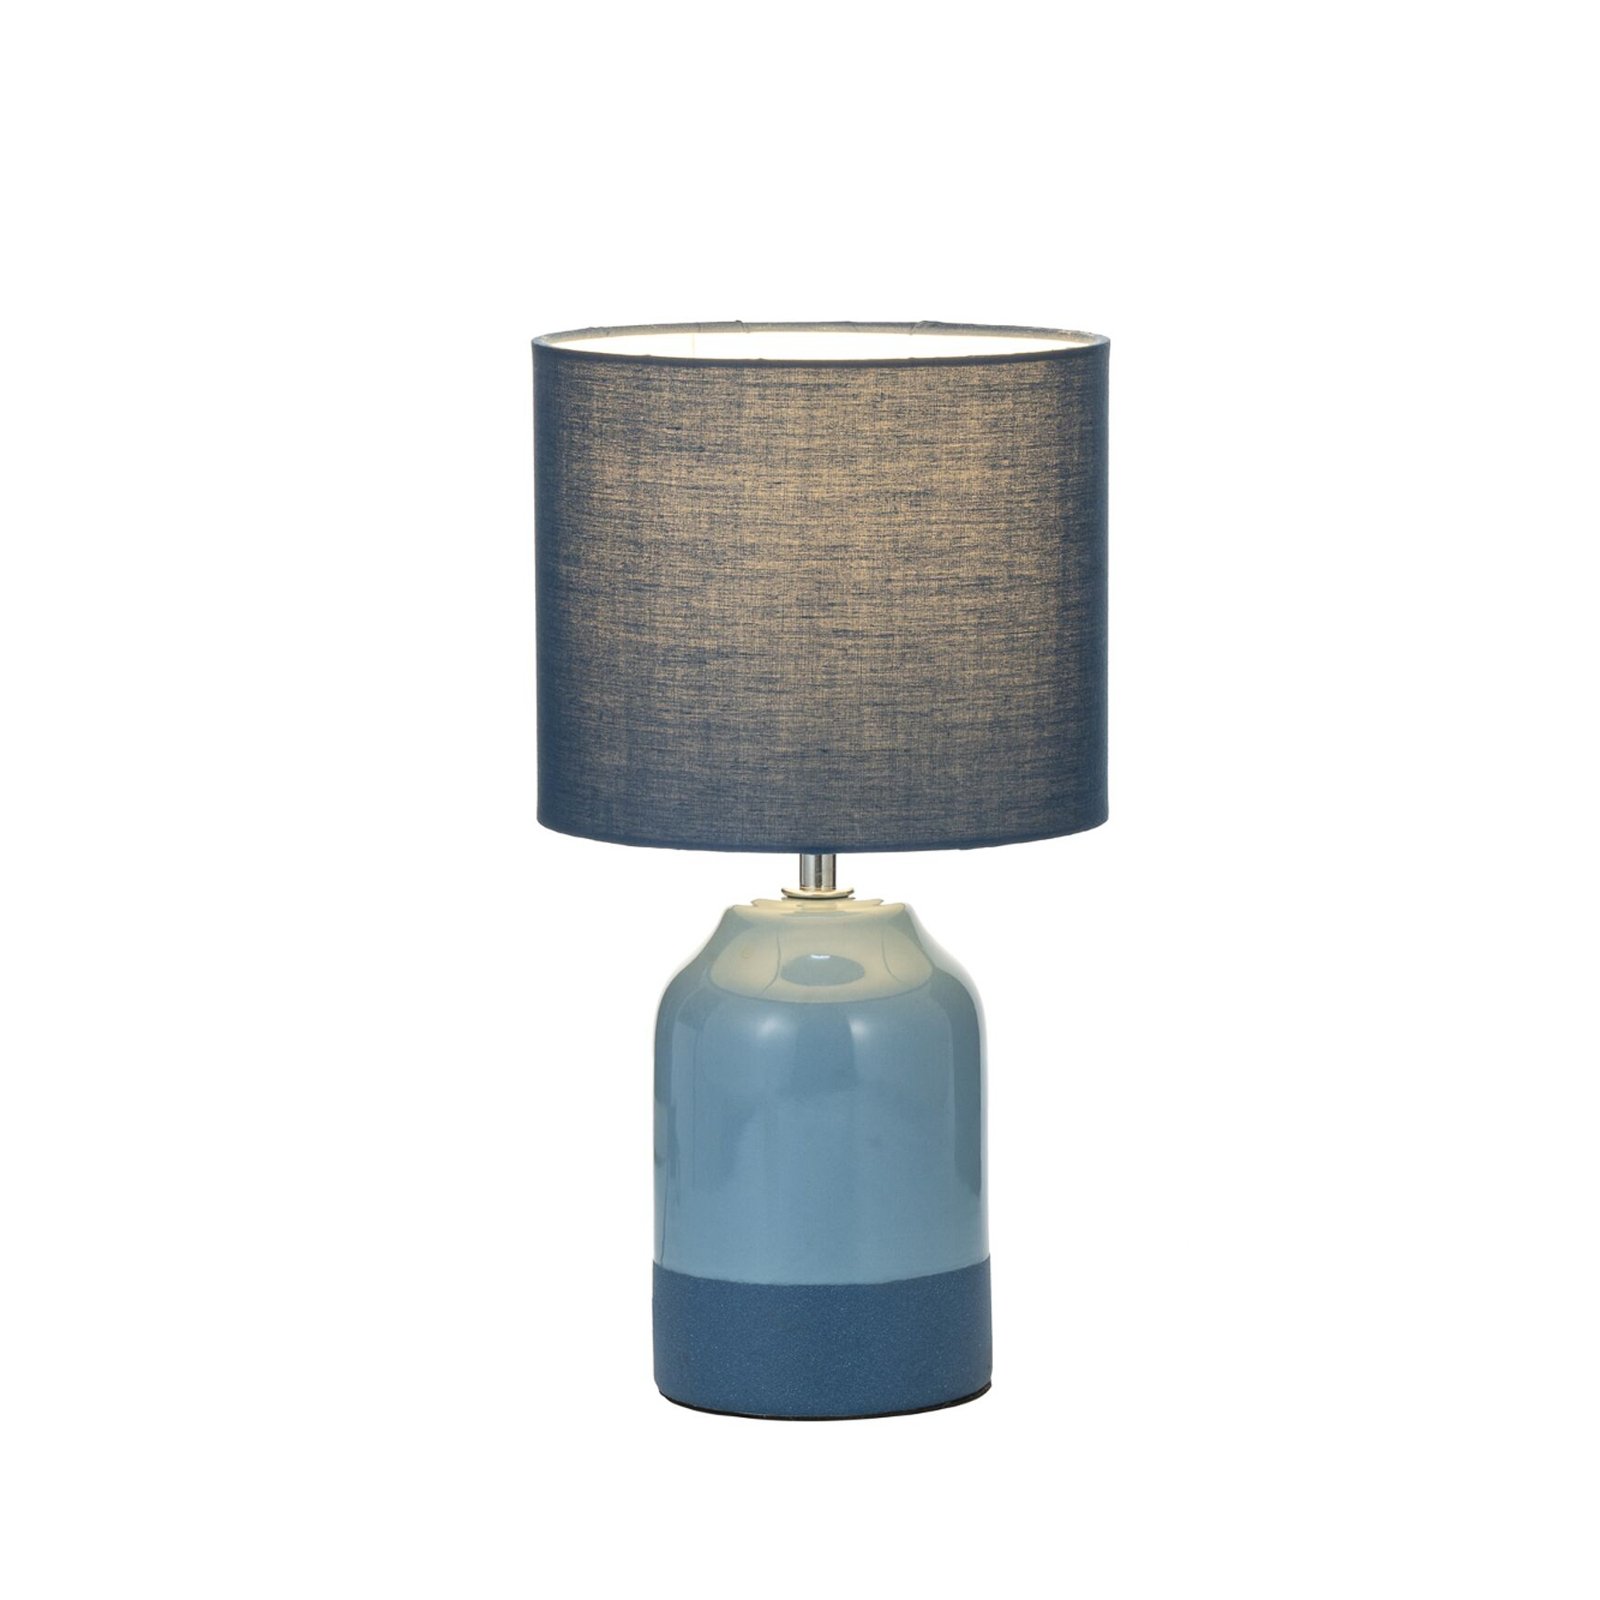 Pauleen Sandy Glow stolová lampa, modrá/modrá